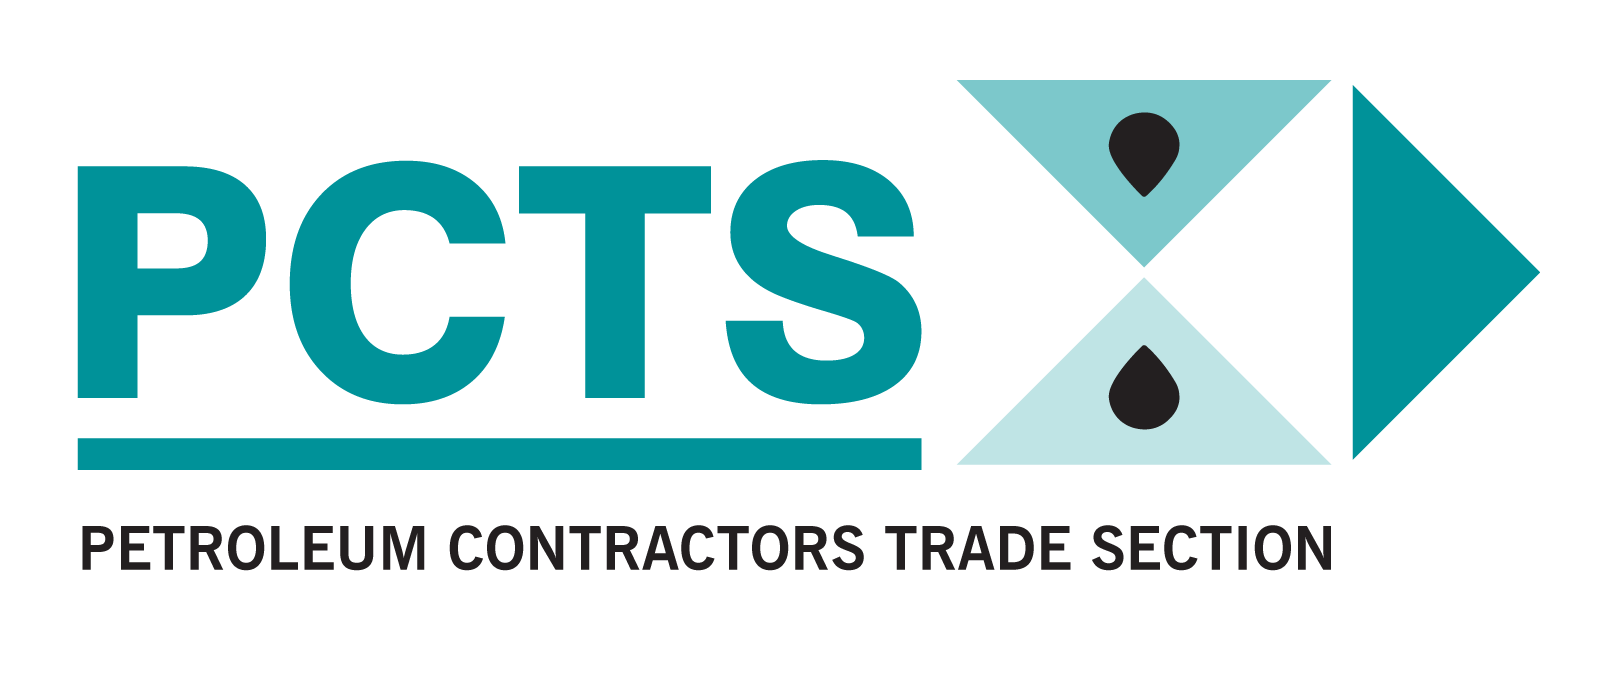 PCTS Logo 23